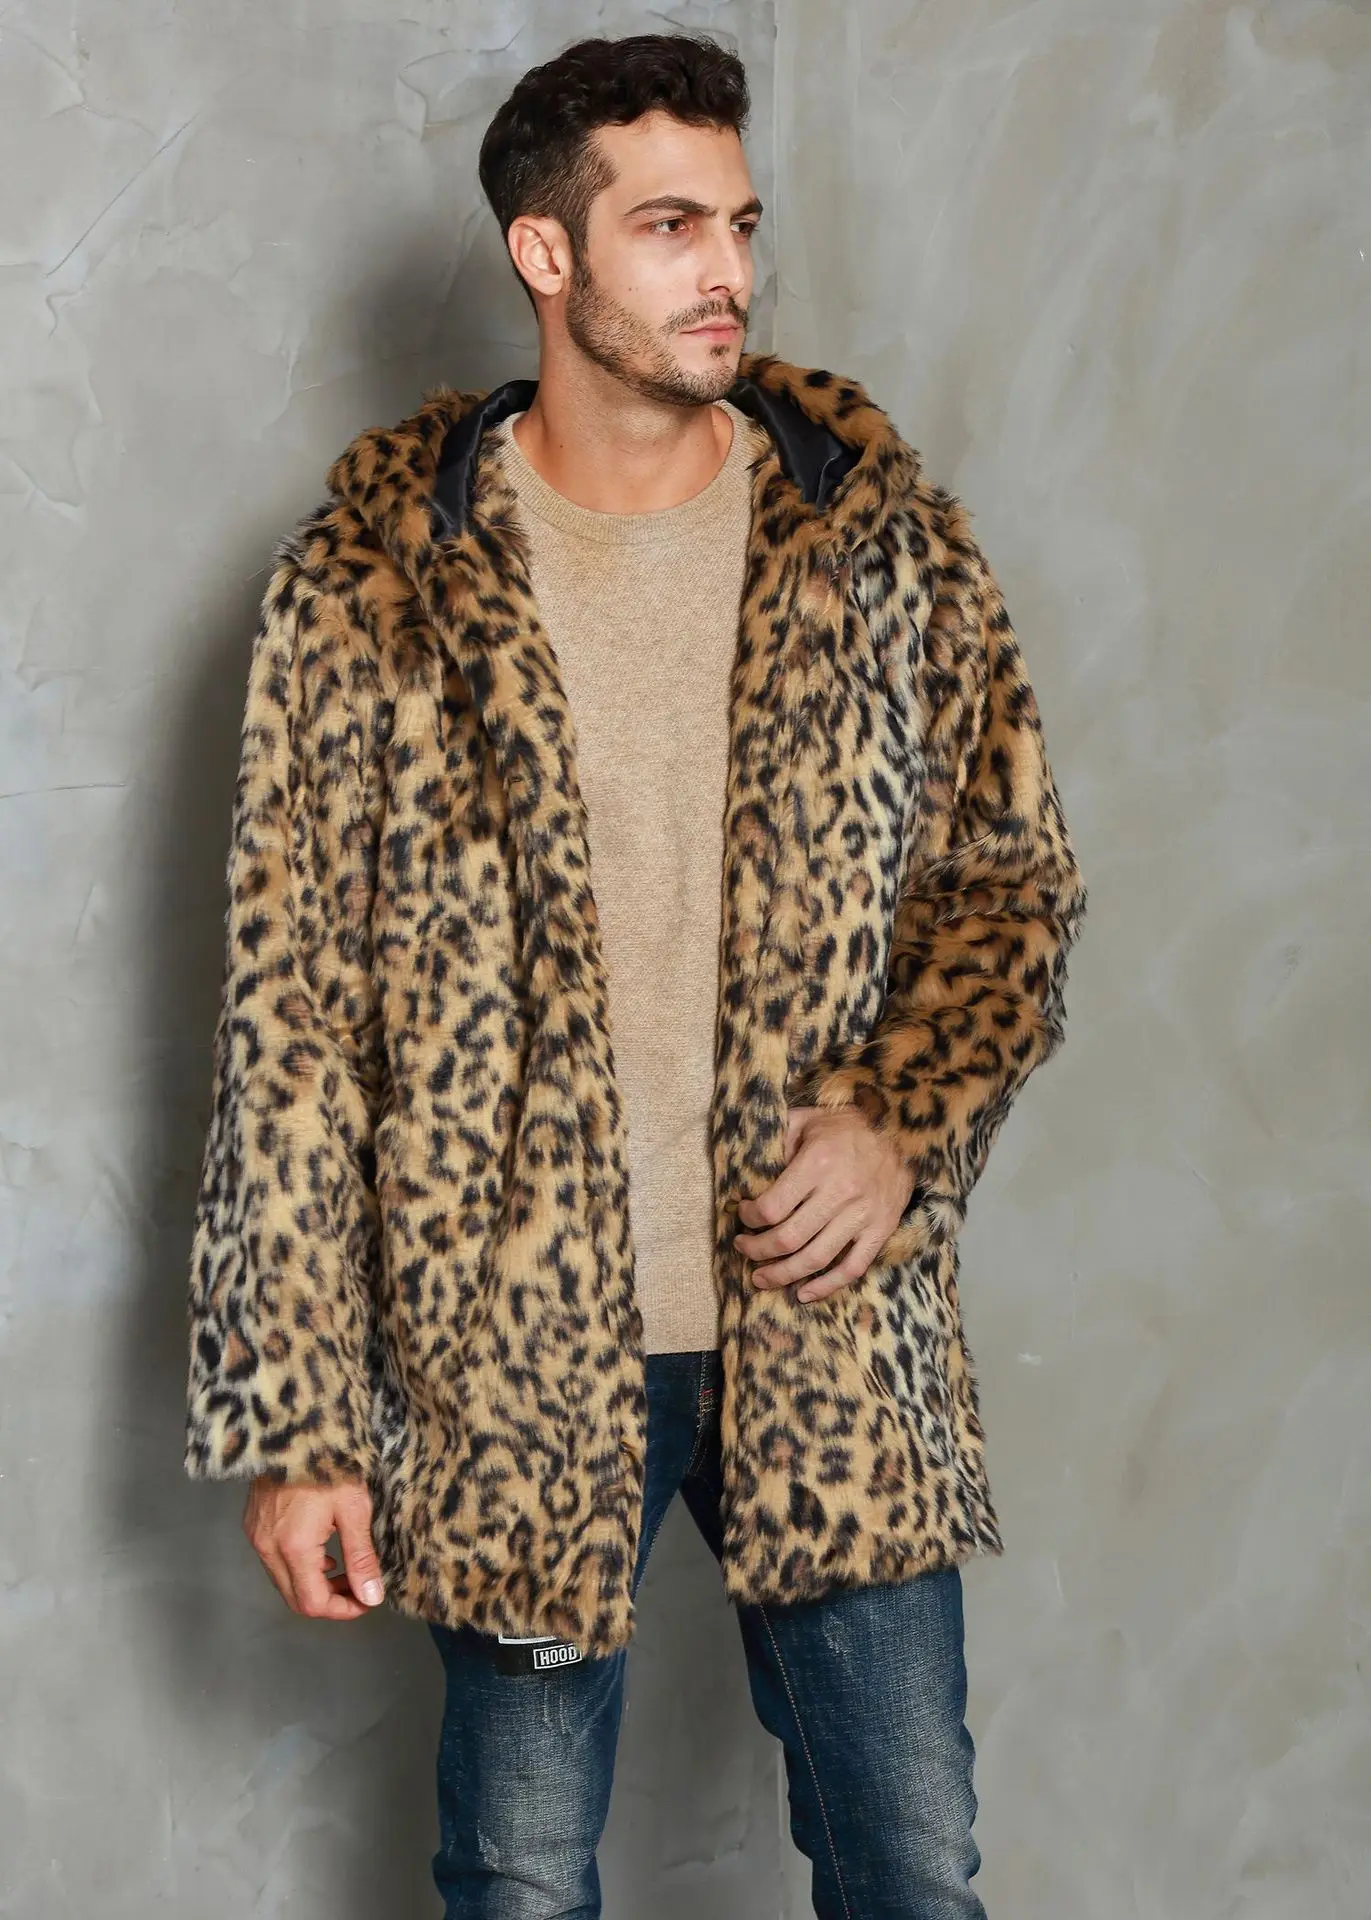 Мужские меховые пальто леопардовая куртка с капюшоном имитация водной гривы модная Роскошная красивая парка пальто Мужское пальто